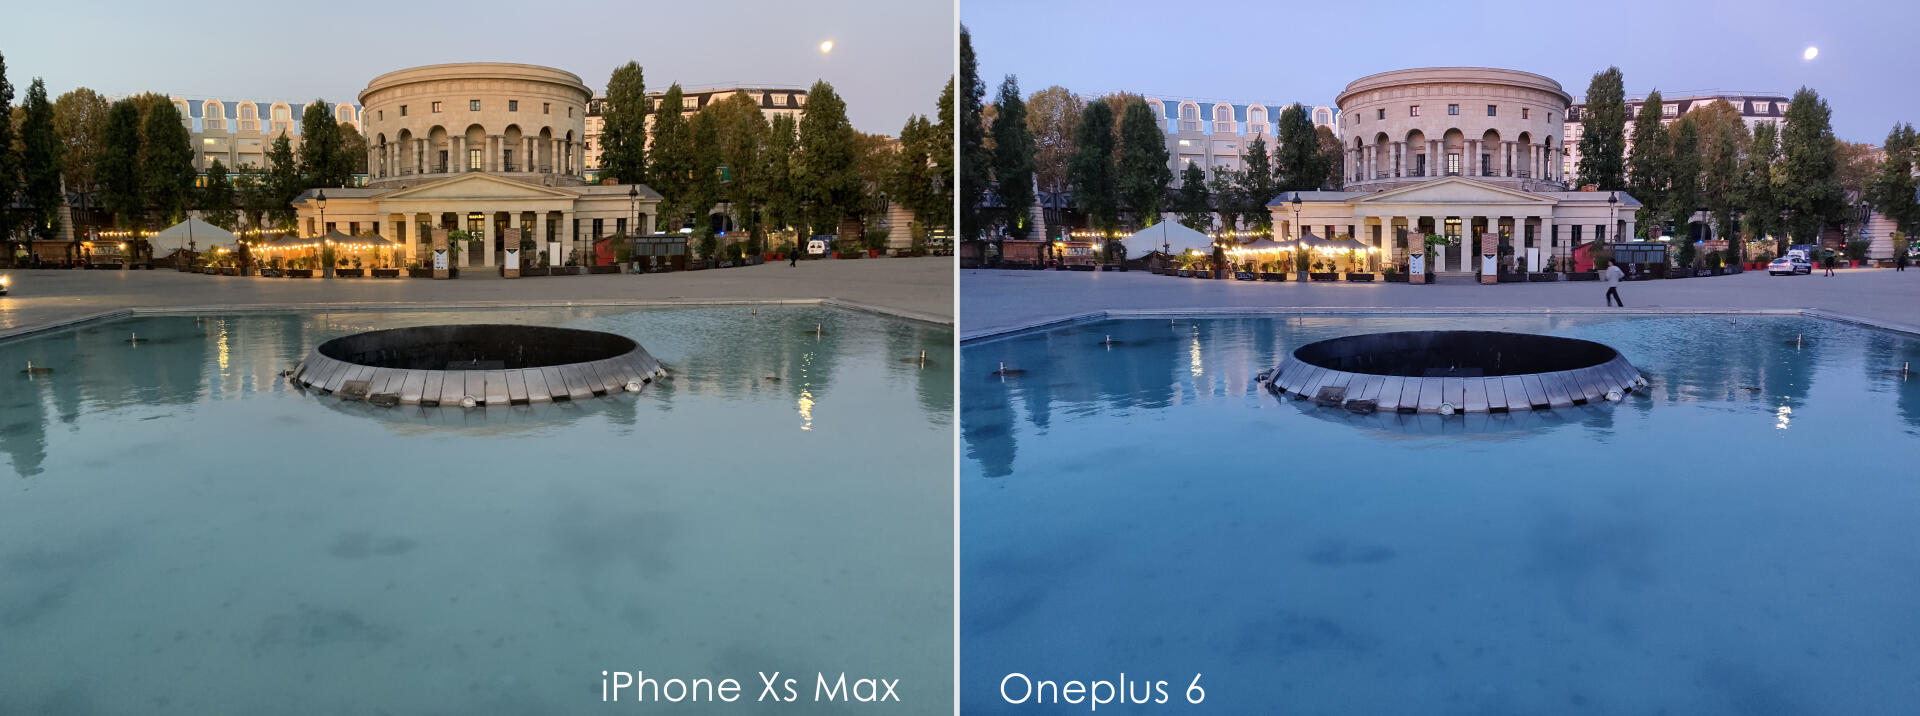 Le Oneplus 6 fait parfois des erreurs de colorimétrie, pas l’iPhone Max.